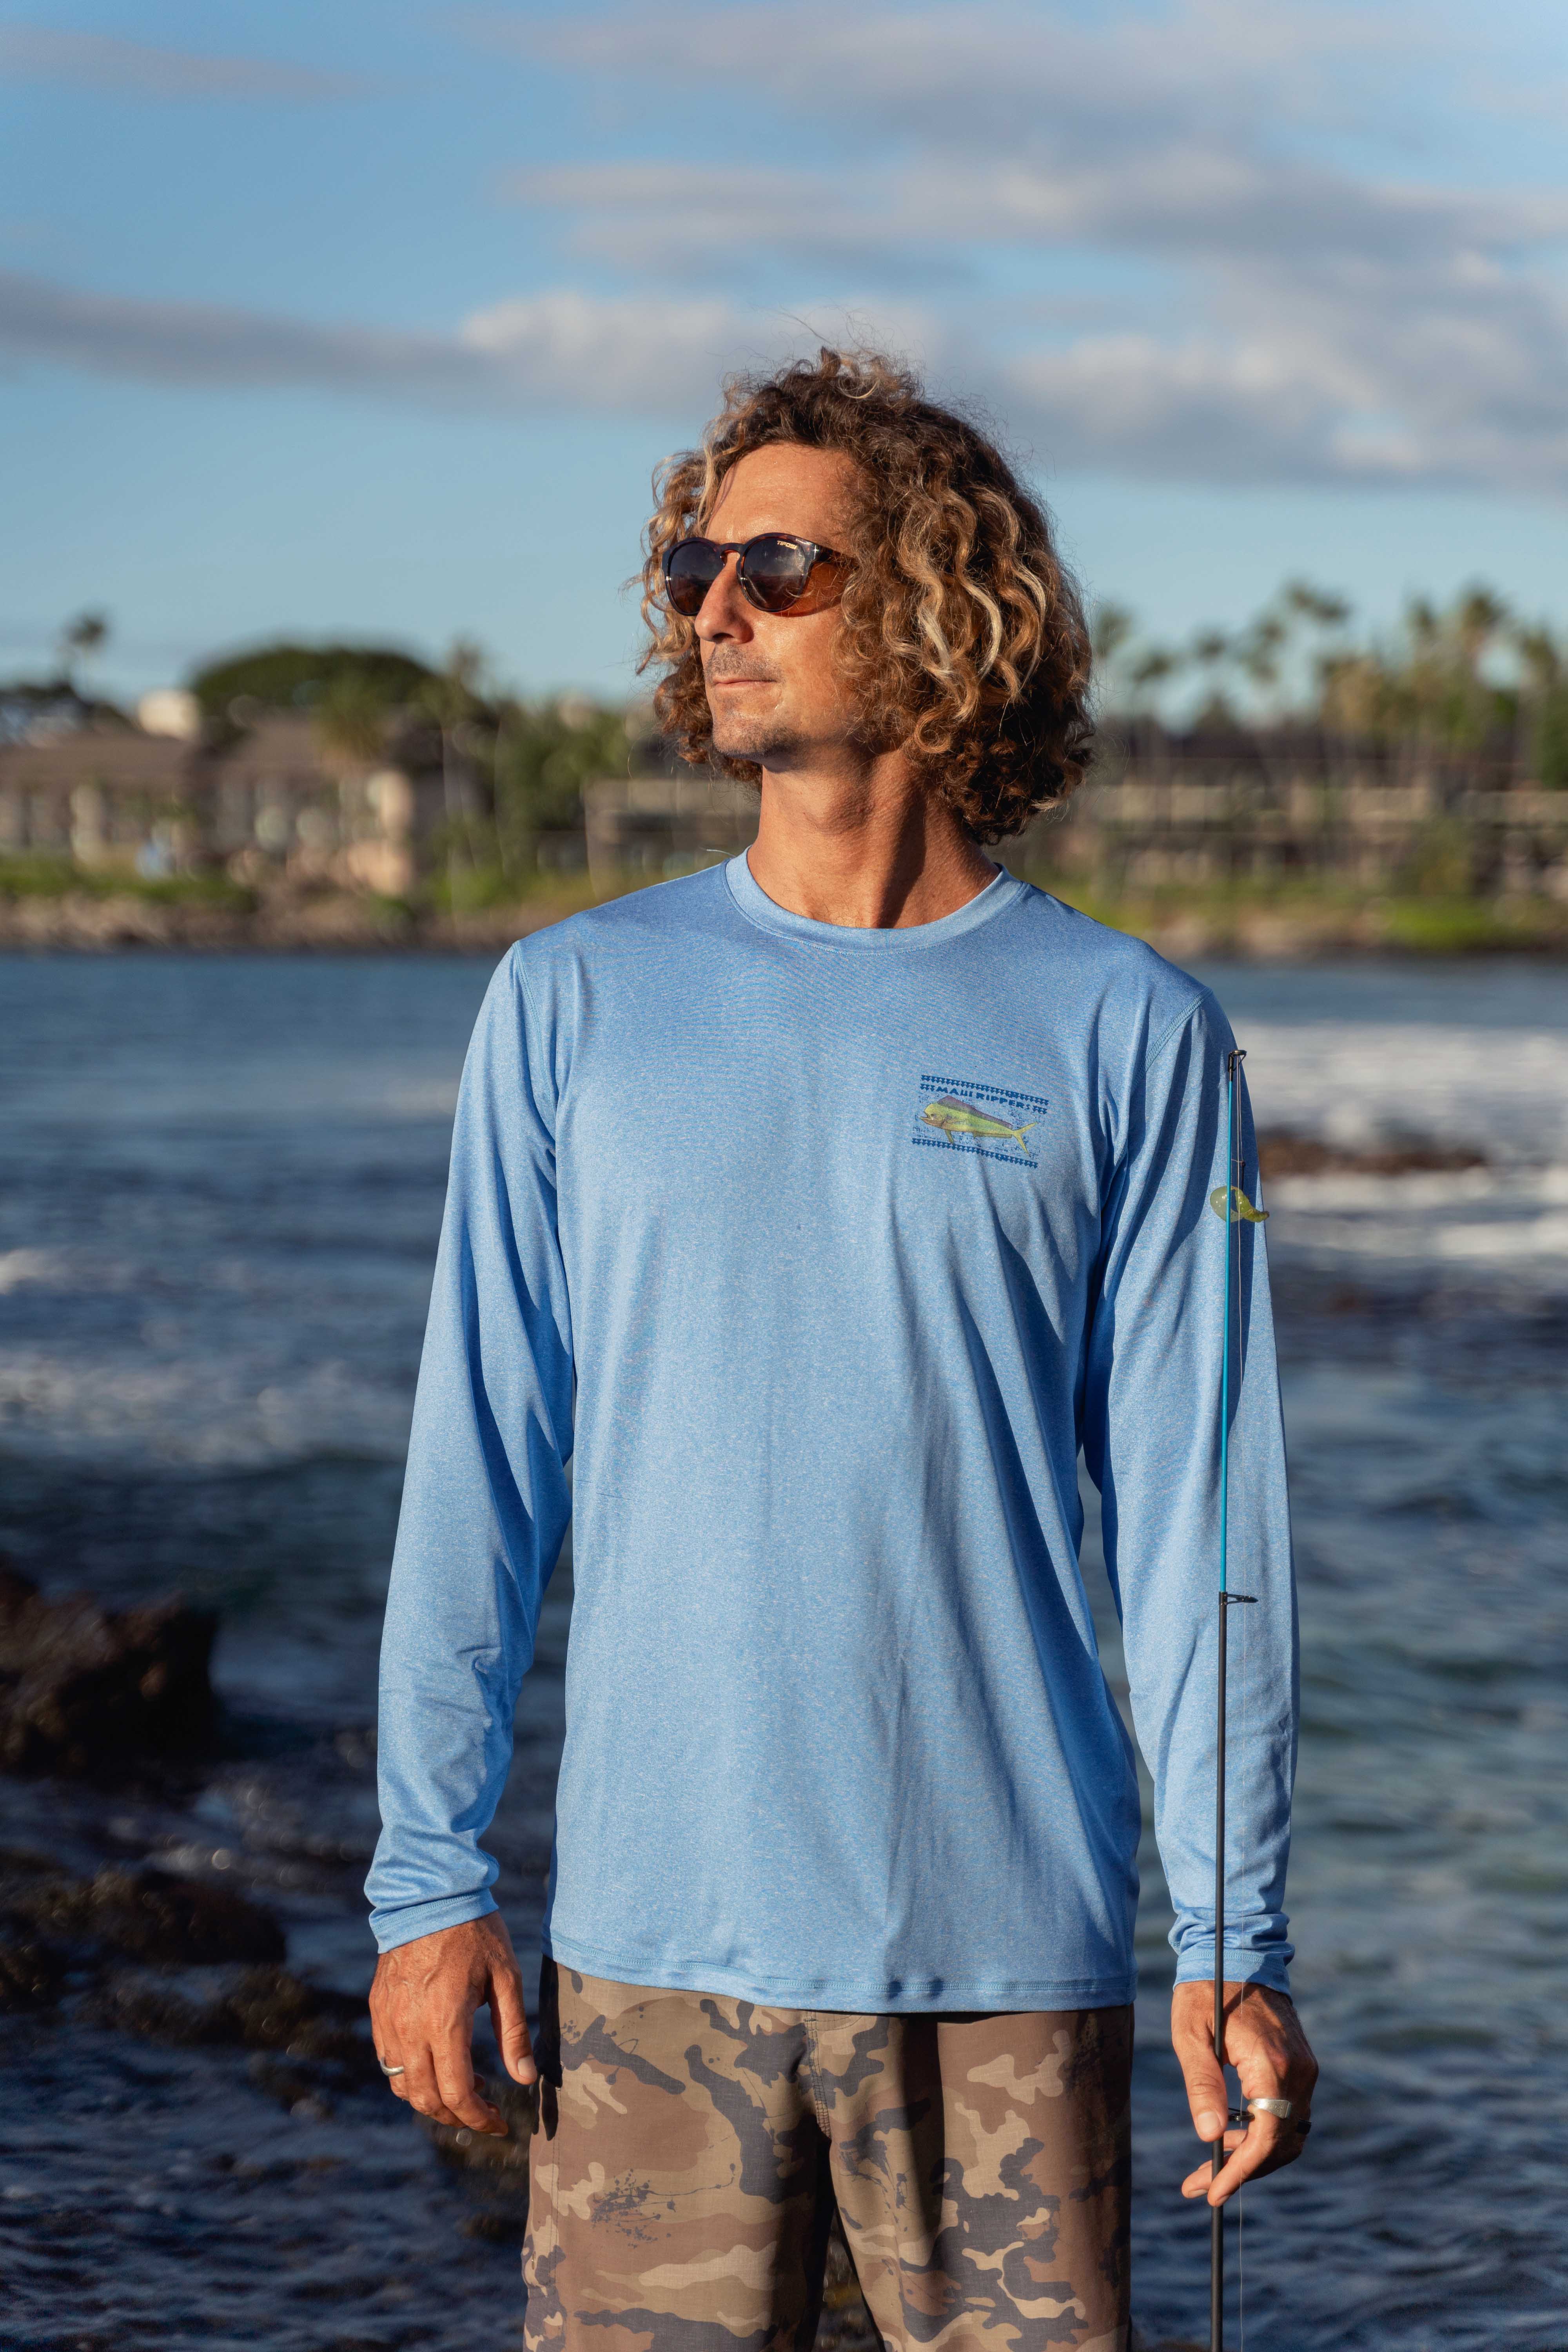 https://mauirippers.com/cdn/shop/files/Maui-rippers-mens-long-sleeve-heather-blue-UPF-sun-shirt-main.jpg?v=1702058492